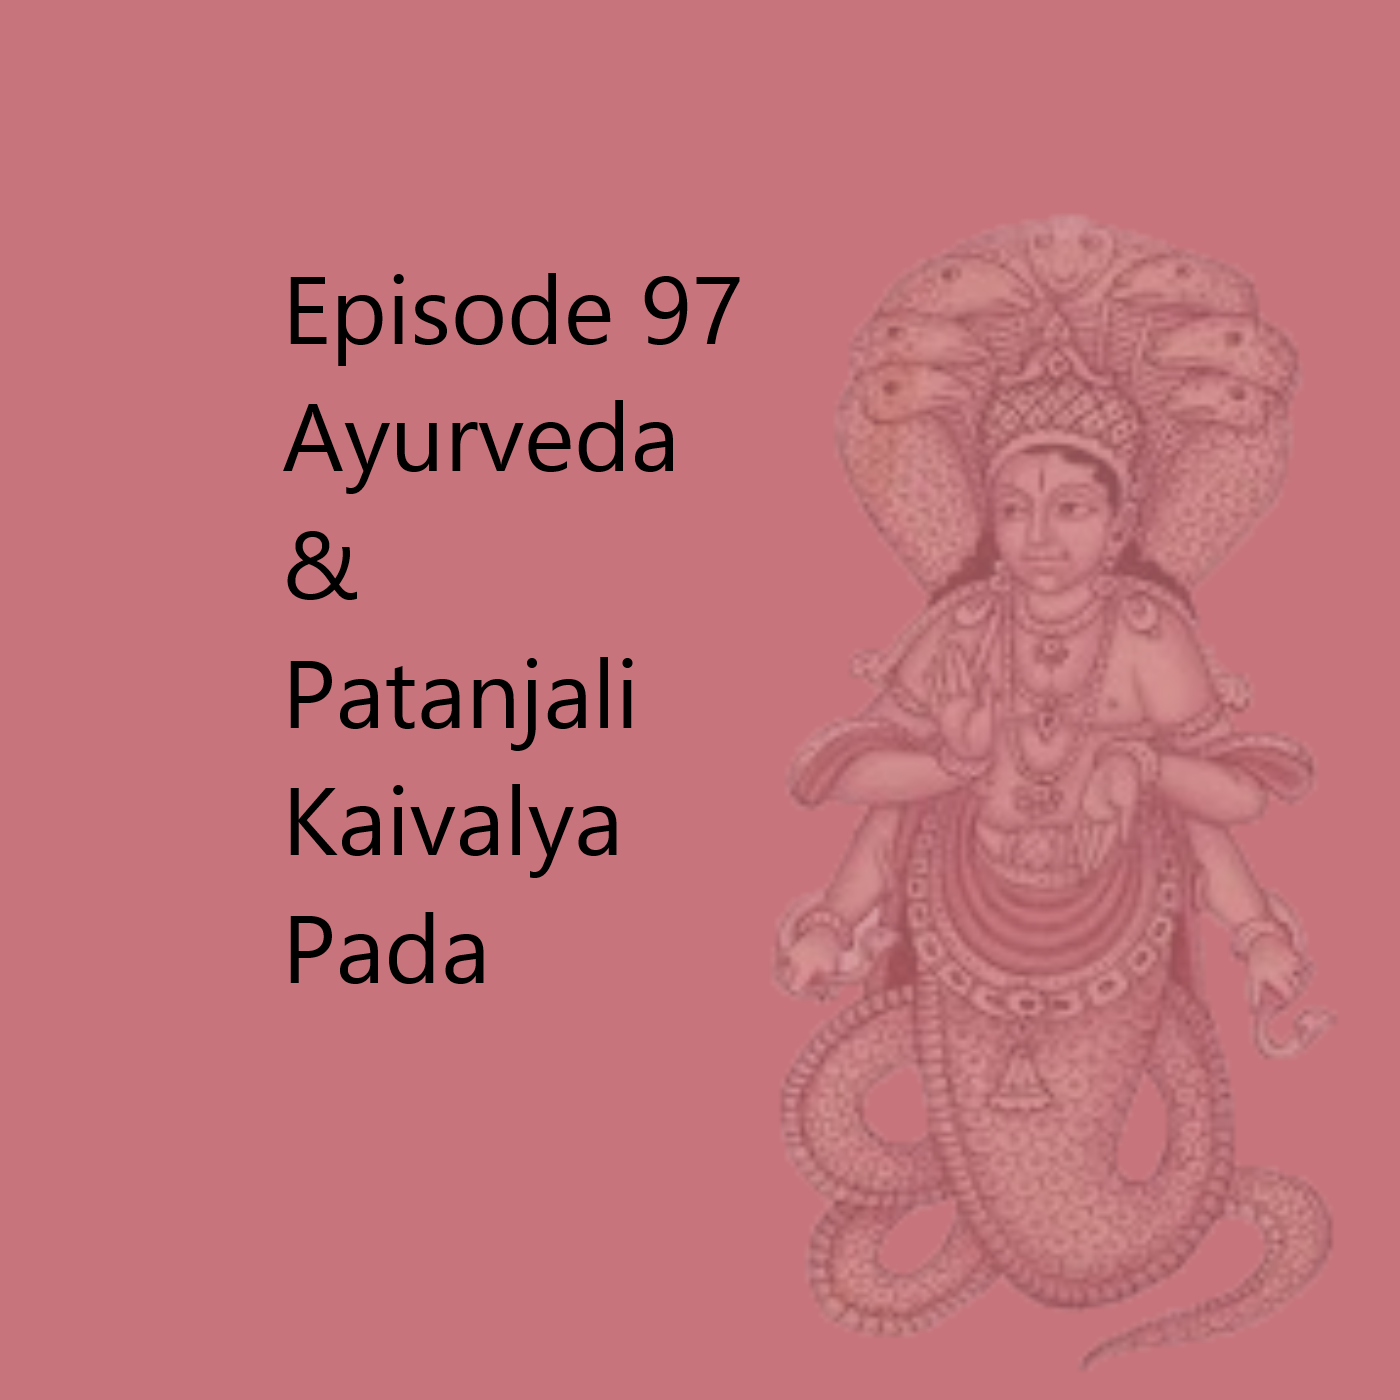 Episode 97 Patanjali Kaivalya Pada